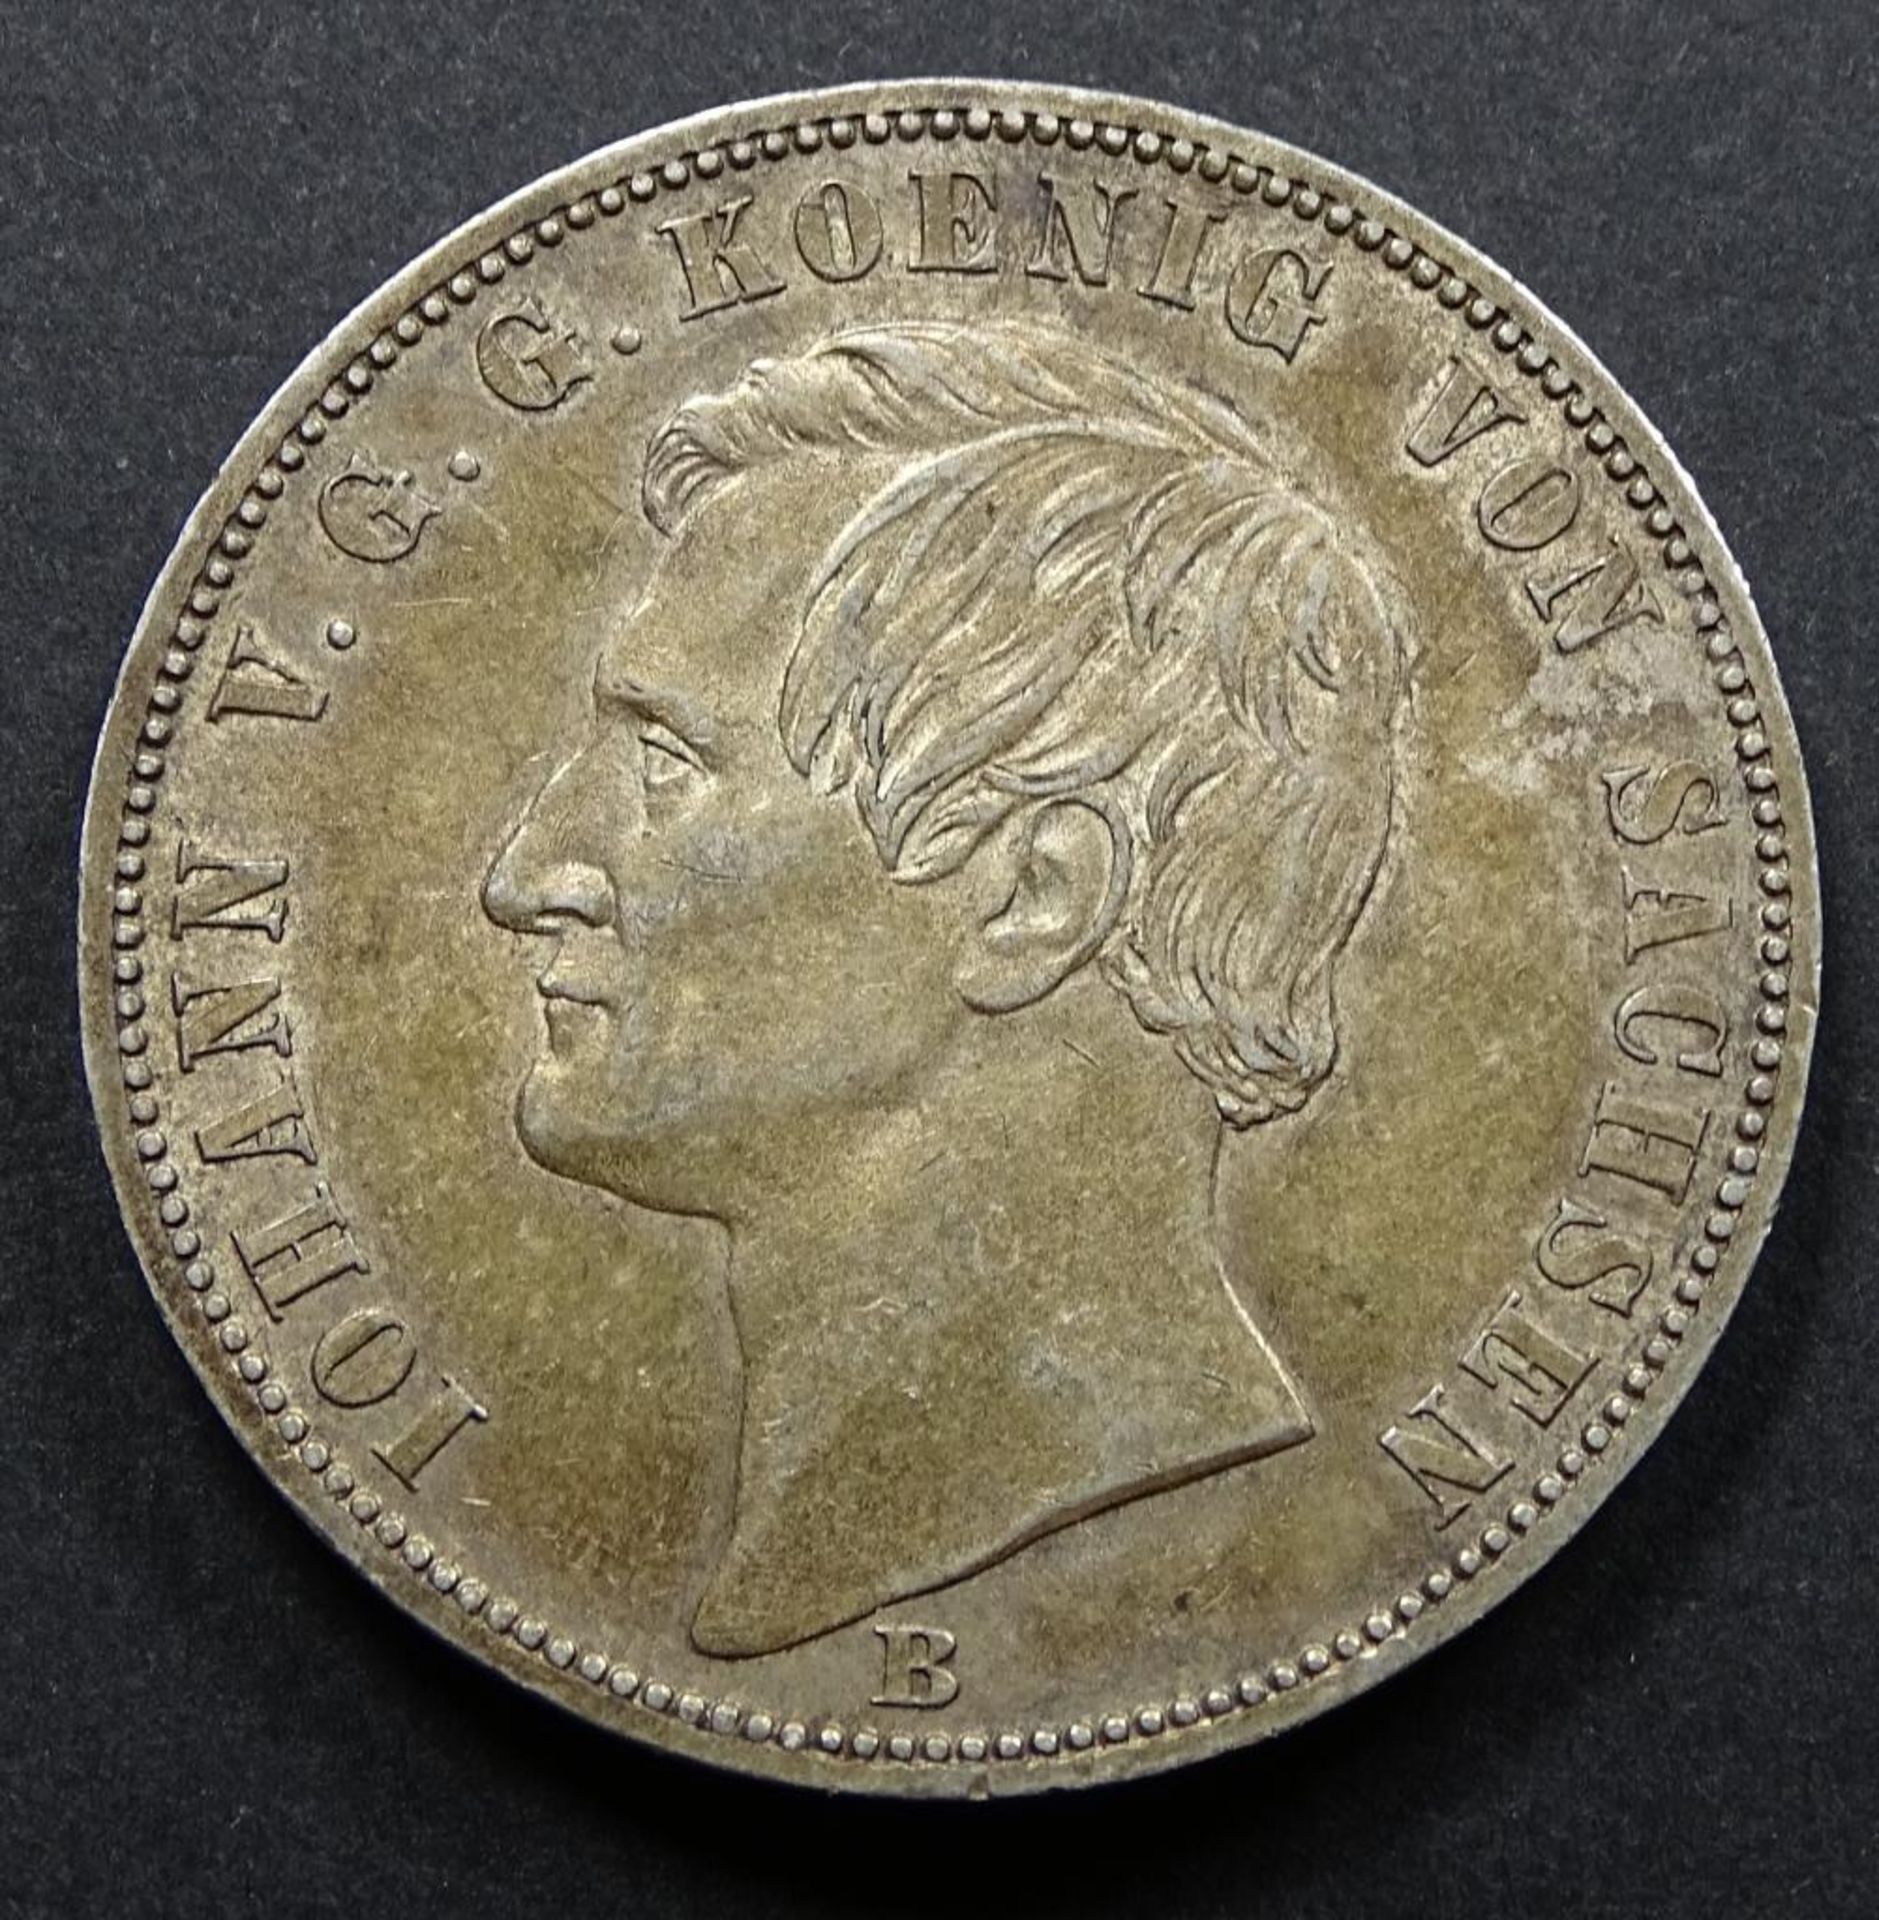 Ein Thaler 1871B,Sachsen,Silber, ss-vz, d-33mm, 18,4gr. - Bild 2 aus 2